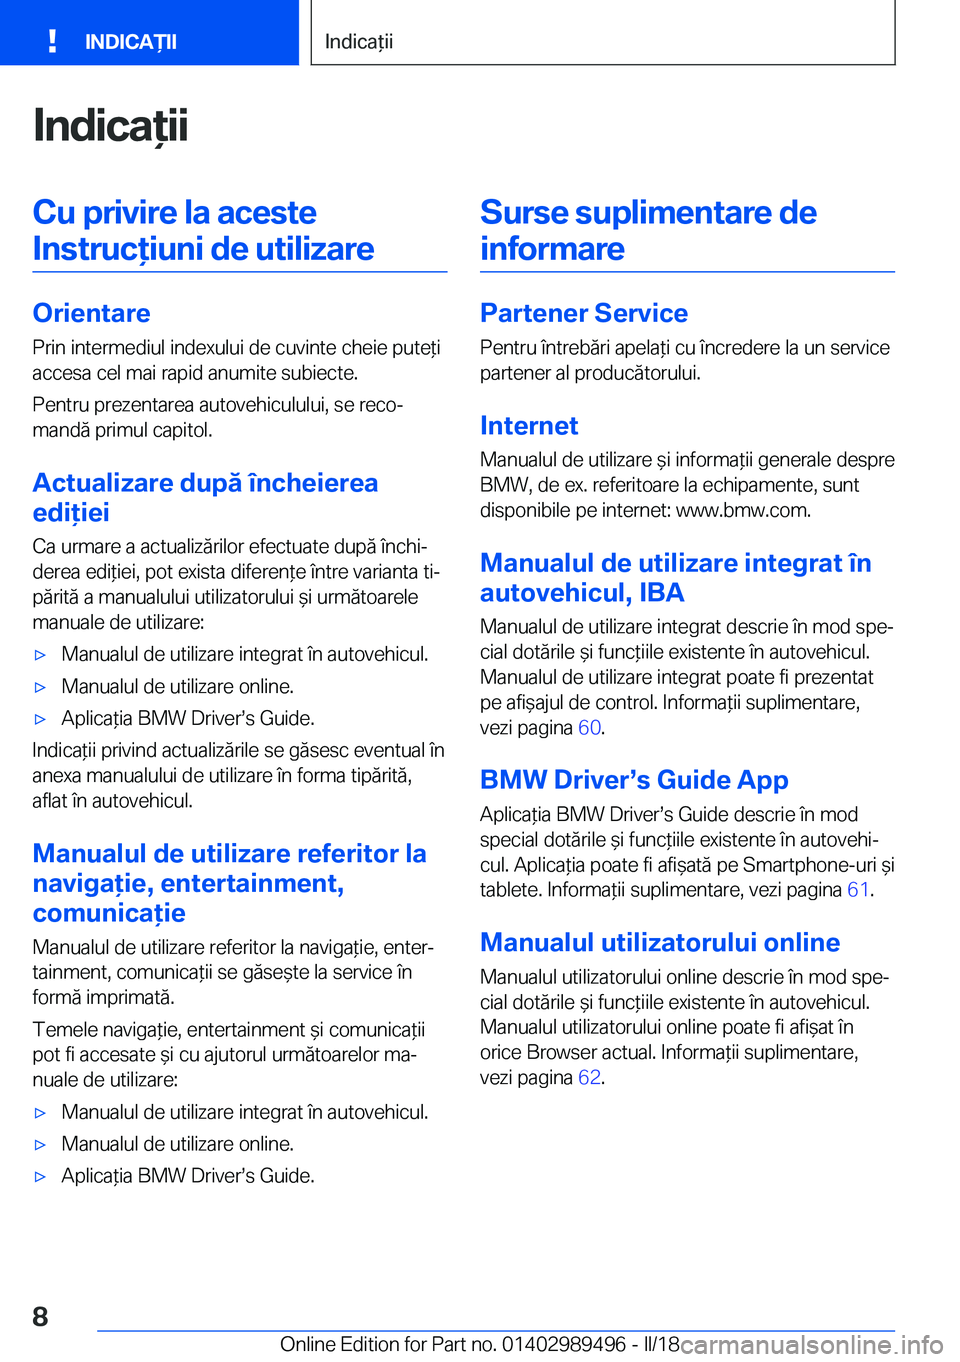 BMW M3 2018  Ghiduri De Utilizare (in Romanian) �I�n�d�i�c�a�i�i�C�u��p�r�i�v�i�r�e��l�a��a�c�e�s�t�e�I�n�s�t�r�u�c�i�u�n�i��d�e��u�t�i�l�i�z�a�r�e
�O�r�i�e�n�t�a�r�e �P�r�i�n� �i�n�t�e�r�m�e�d�i�u�l� �i�n�d�e�x�u�l�u�i� �d�e� �c�u�v�i�n�t